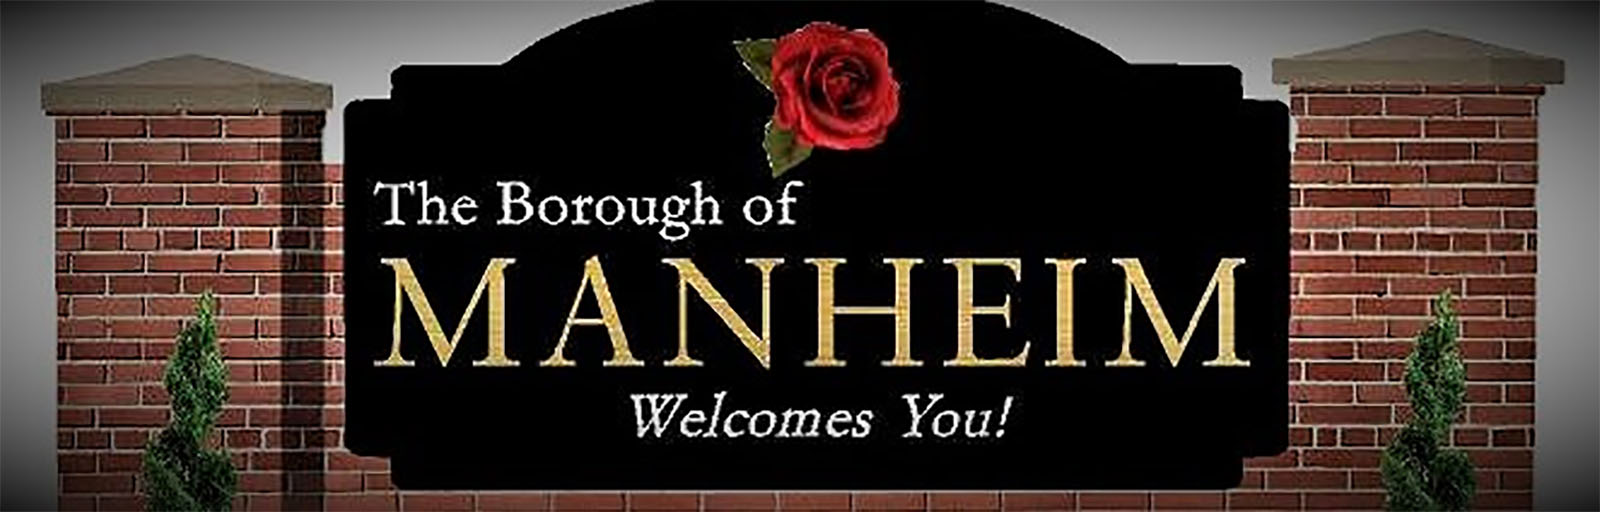 Manheim Borough Welcomes You